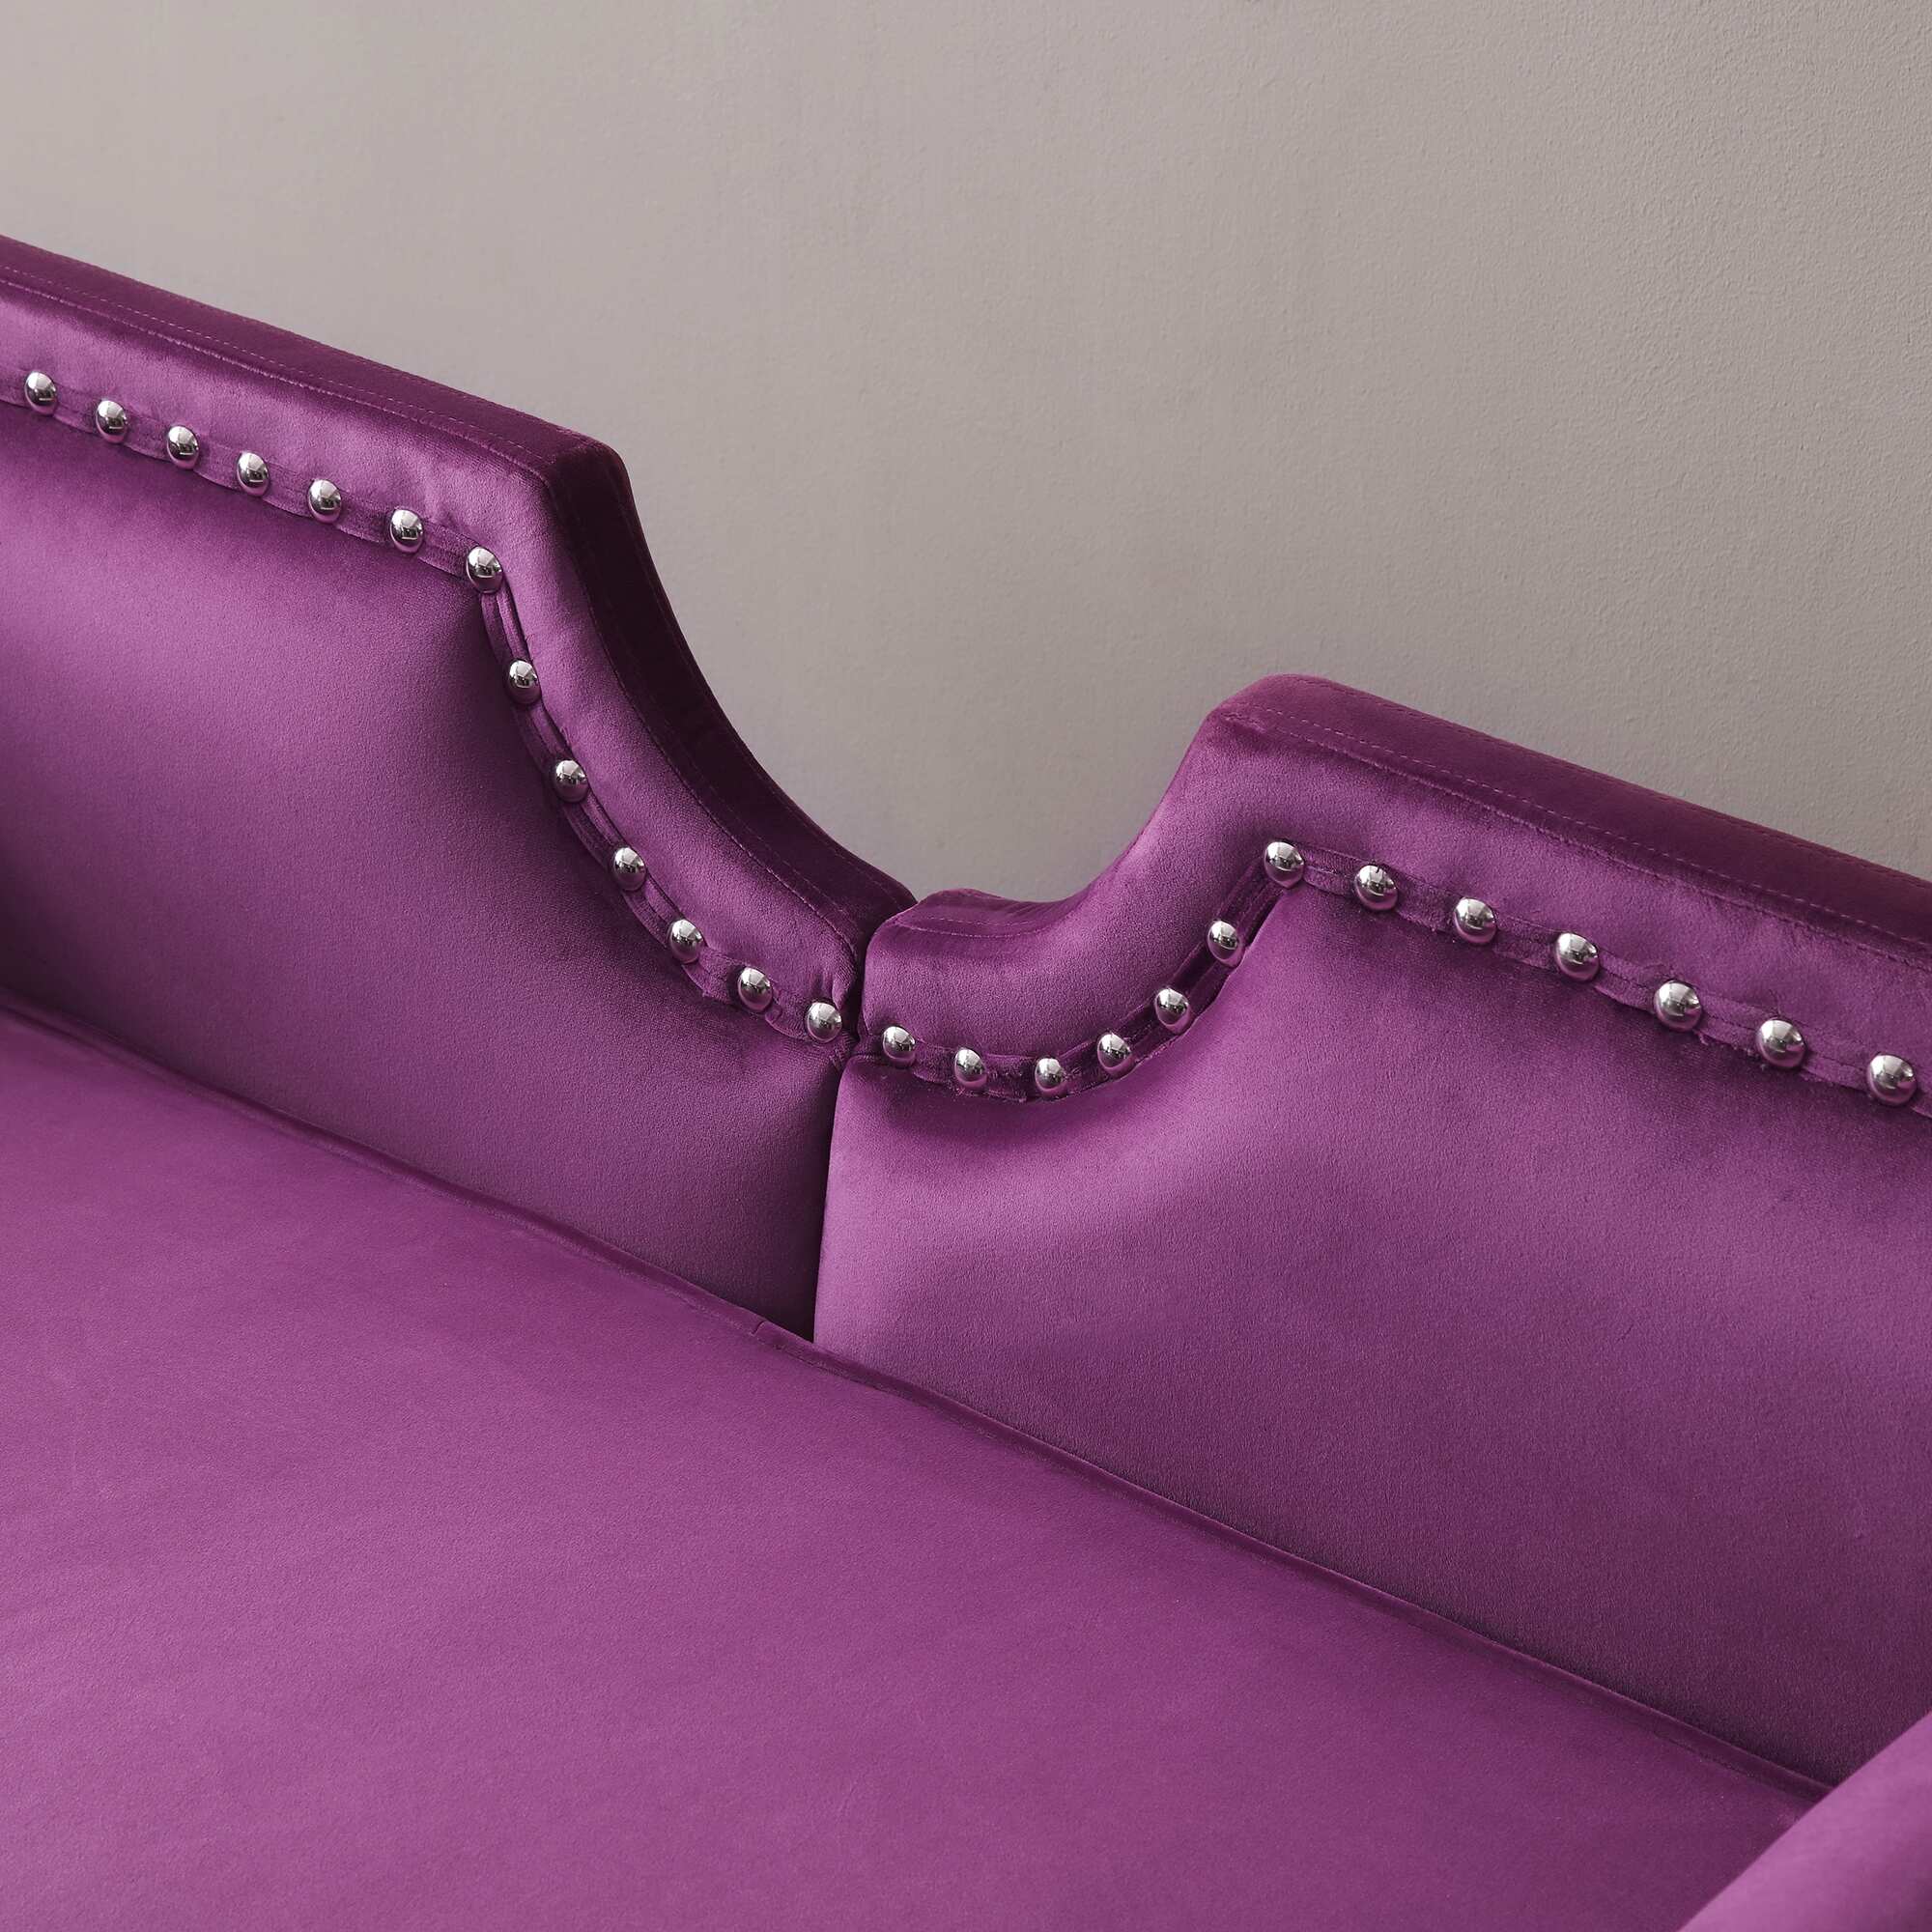 66" Width Velvet Loveseat Sofa, Upholstered Sofa for Bedroom, Living Room, Roll Arms Sofa with 2 Bolster Pillows